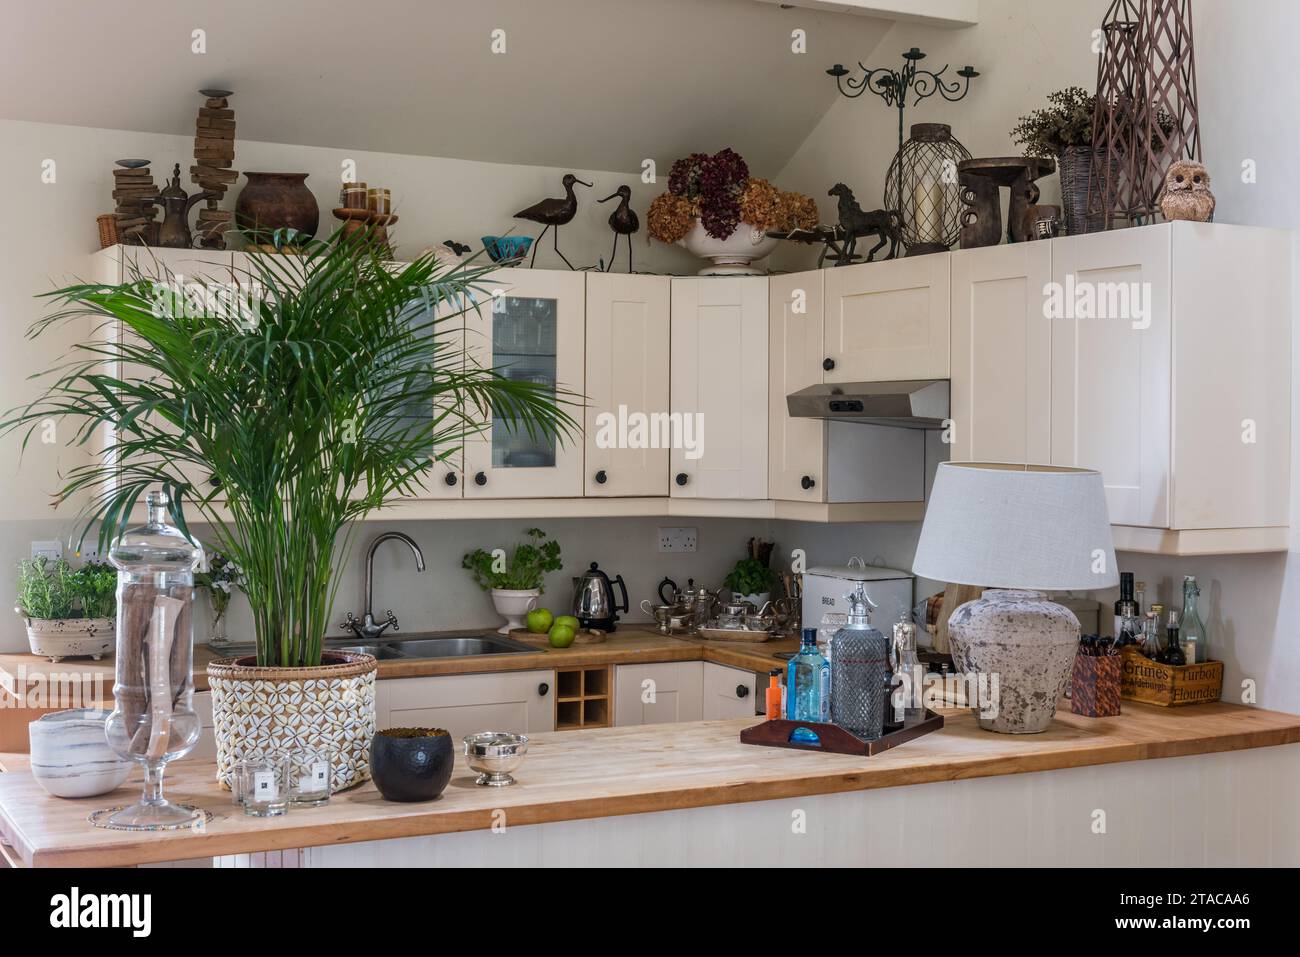 Cucina attrezzata con ornamenti africani scolpiti in stile coloniale a un piano. Truro, Cornovaglia, Regno Unito. Foto Stock